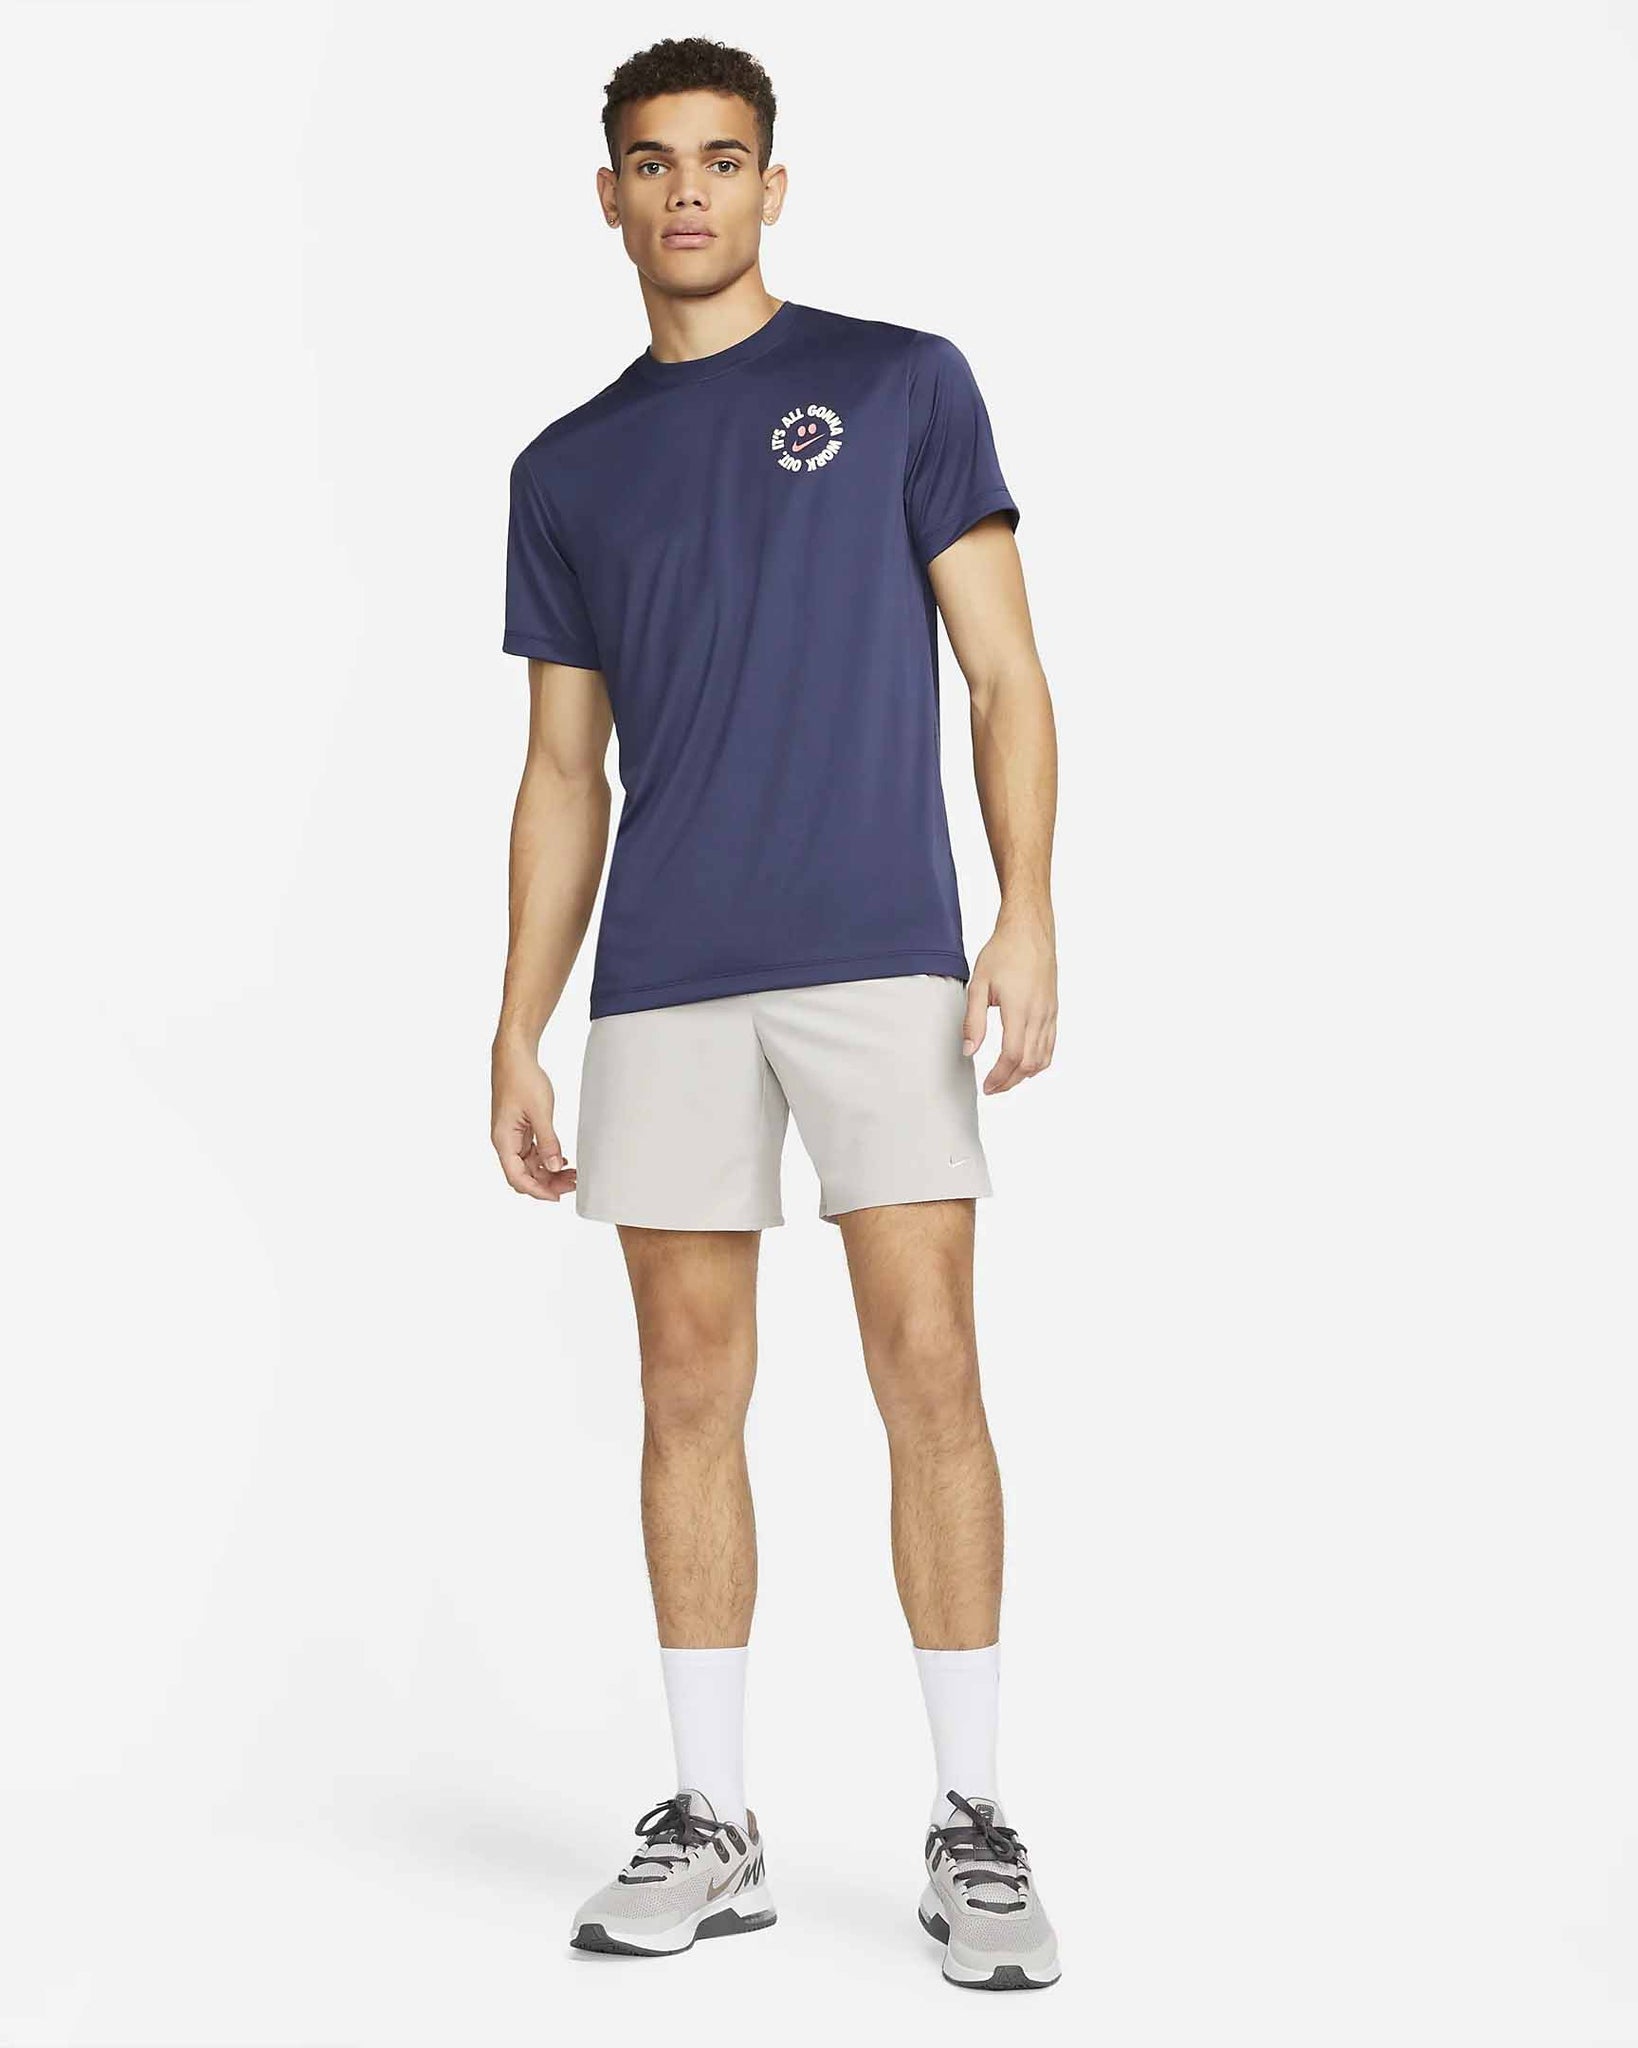 Camiseta DRI-Fit de entrenamiento con falda It's All de Nike